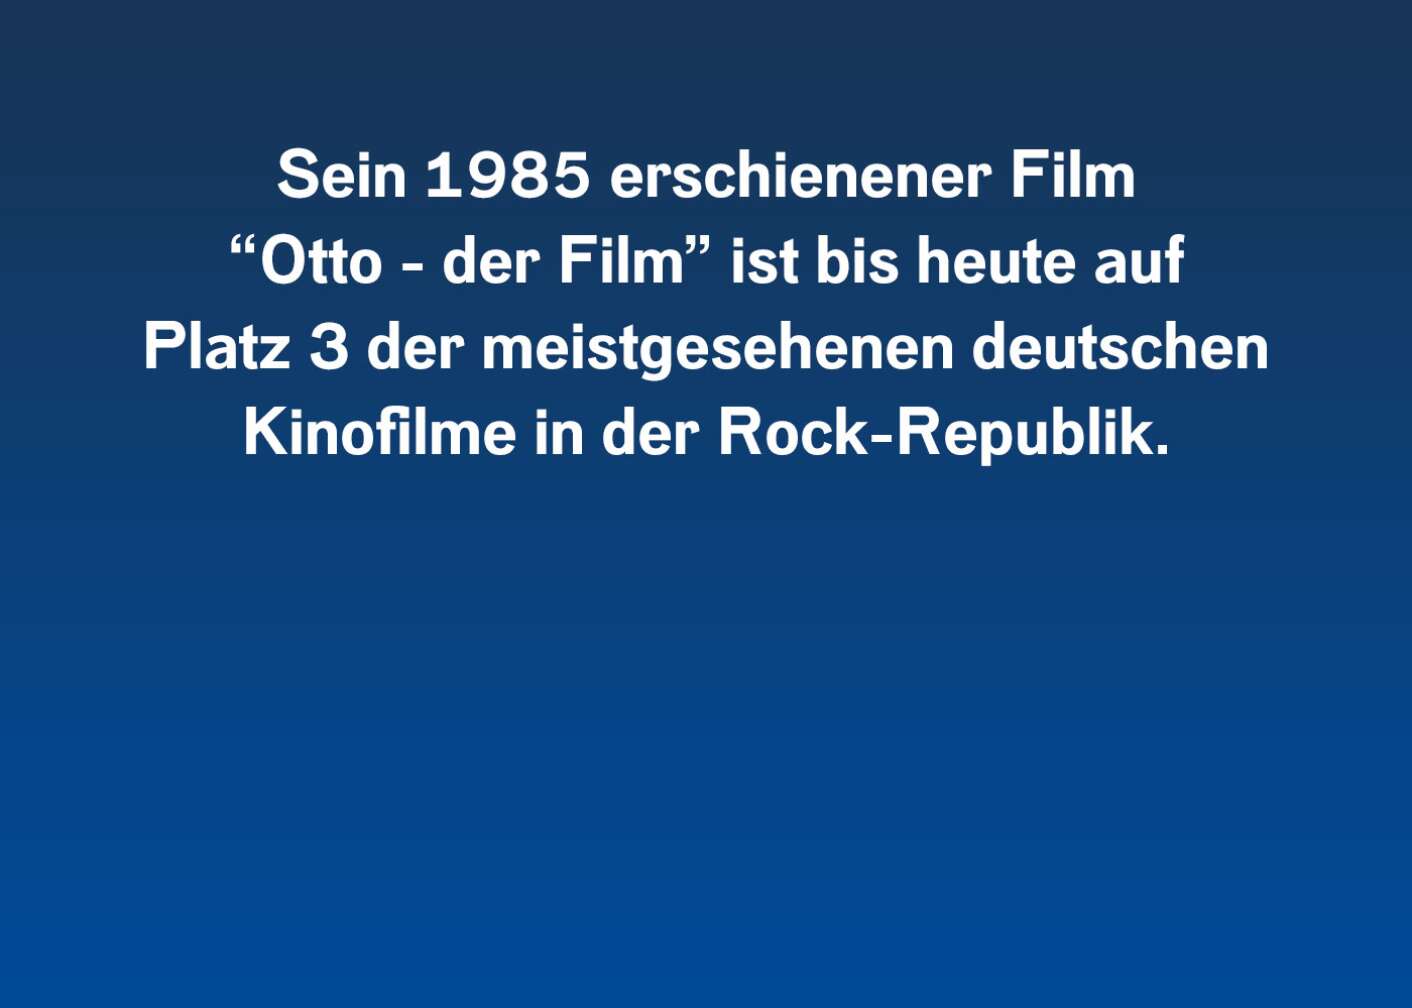 Sein 1985 erschienener Film "Otto - der Film" ist bis heute auf Platz 3 der meistgesehenen deutschen Kinofilme in der Rock-Republik.